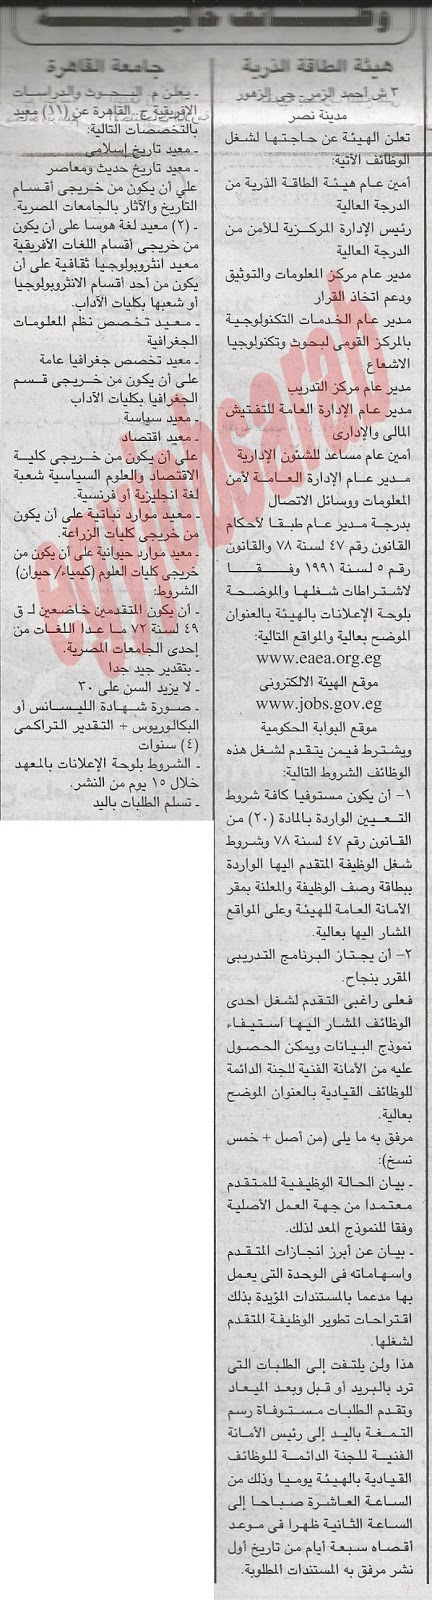 وظائف خالية من جريدة الجمهورية الاثنين 3 ديسمبر 2012 - وظائف مصر %D8%A7%D9%84%D8%AC%D9%85%D9%87%D9%88%D8%B1%D9%8A%D8%A9+1